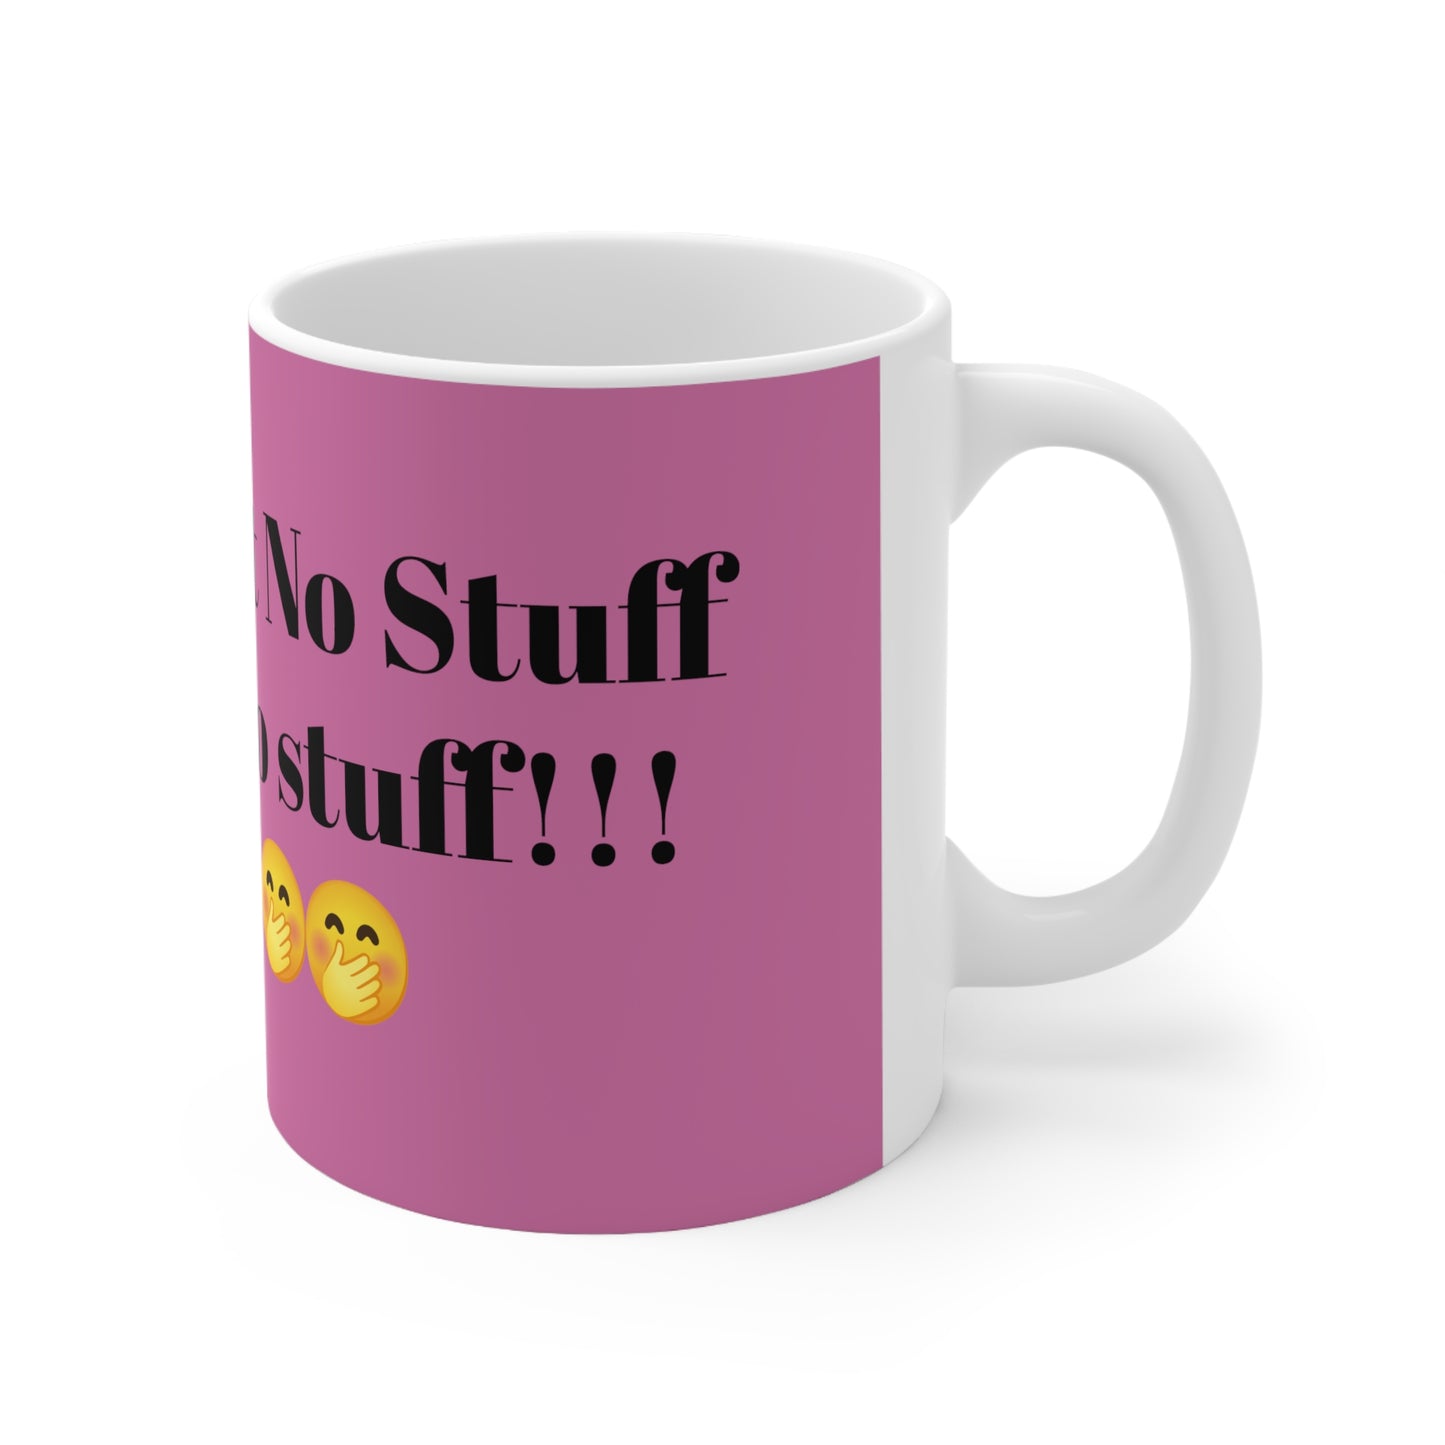 "DON'T START NO STUFF WON'T BE NO STUFF" Pink mug